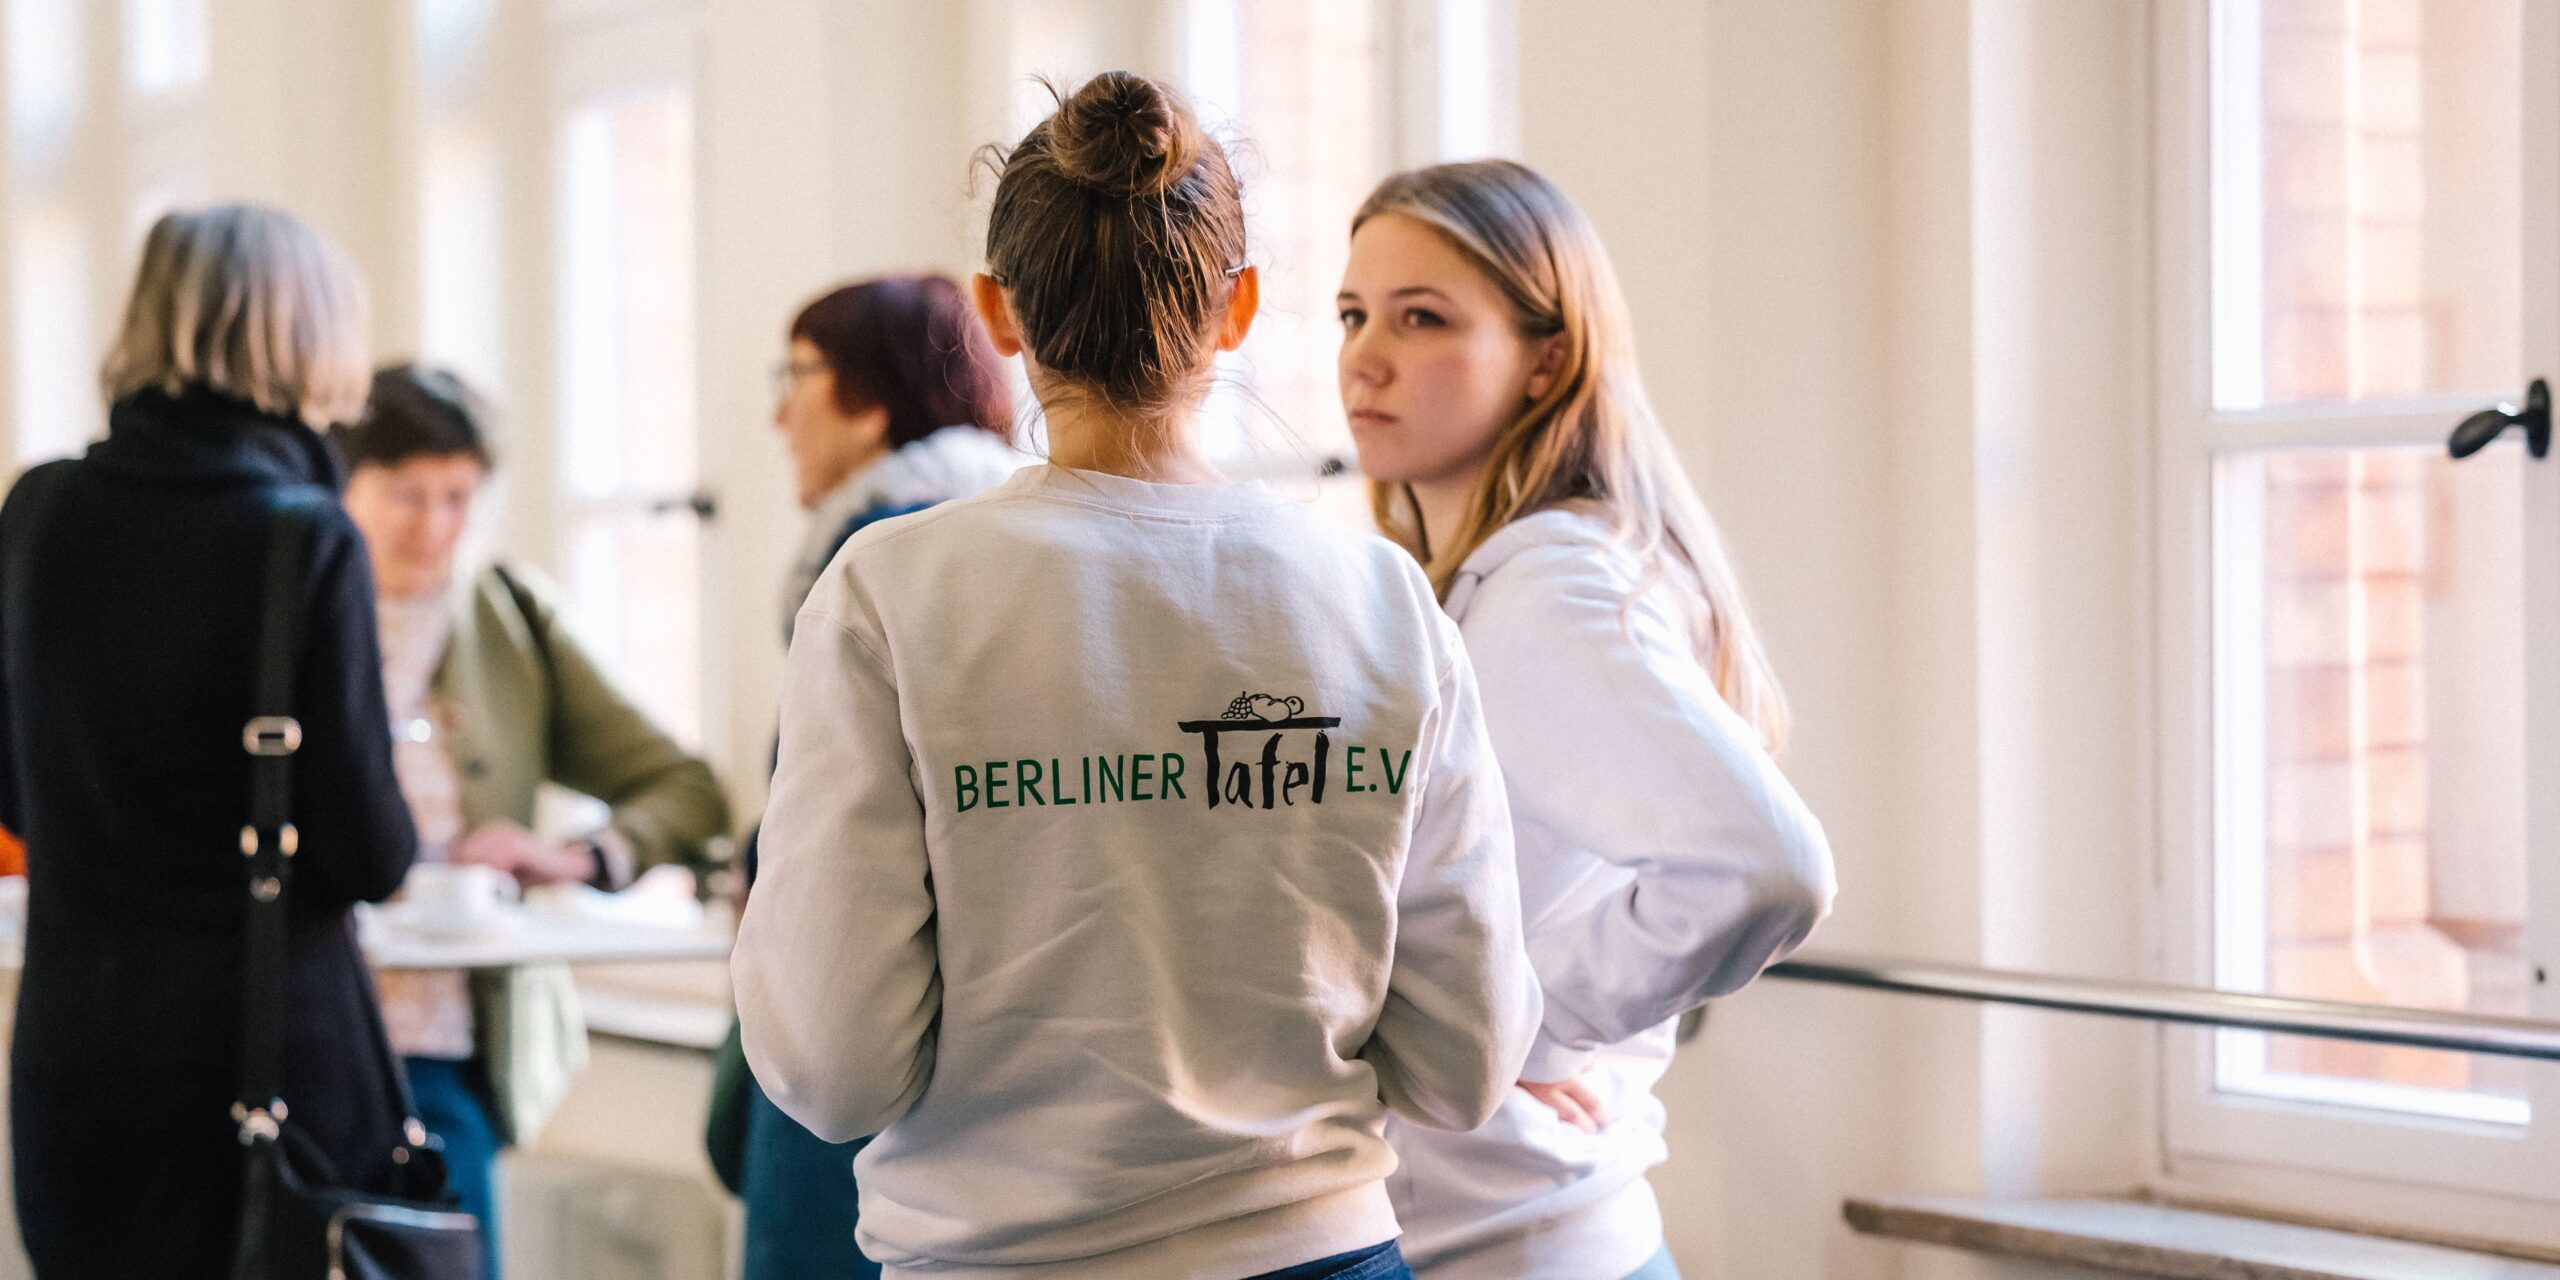 Zwei junge Frauen unterhalten sich. Die eine steht mit dem Rücken zum Bild, auf dem das Logo der Berliner Tafel abgedruckt ist.